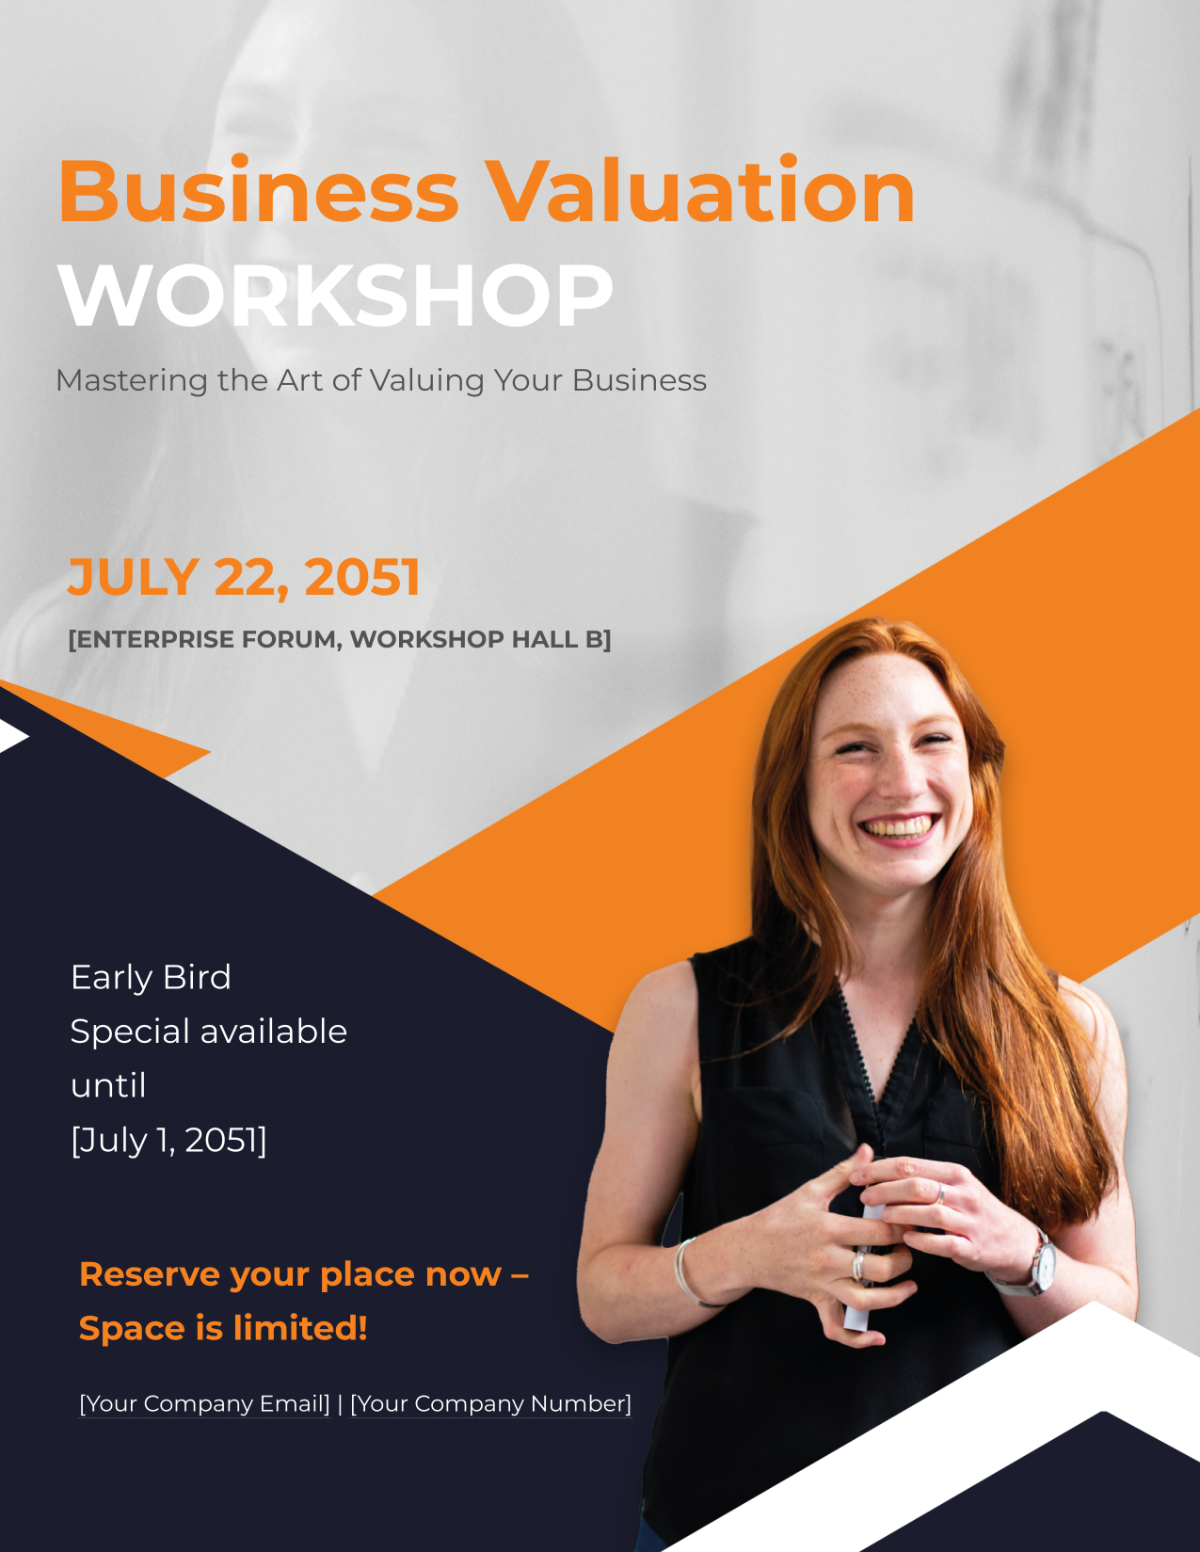 Business Valuation Workshop Flyer